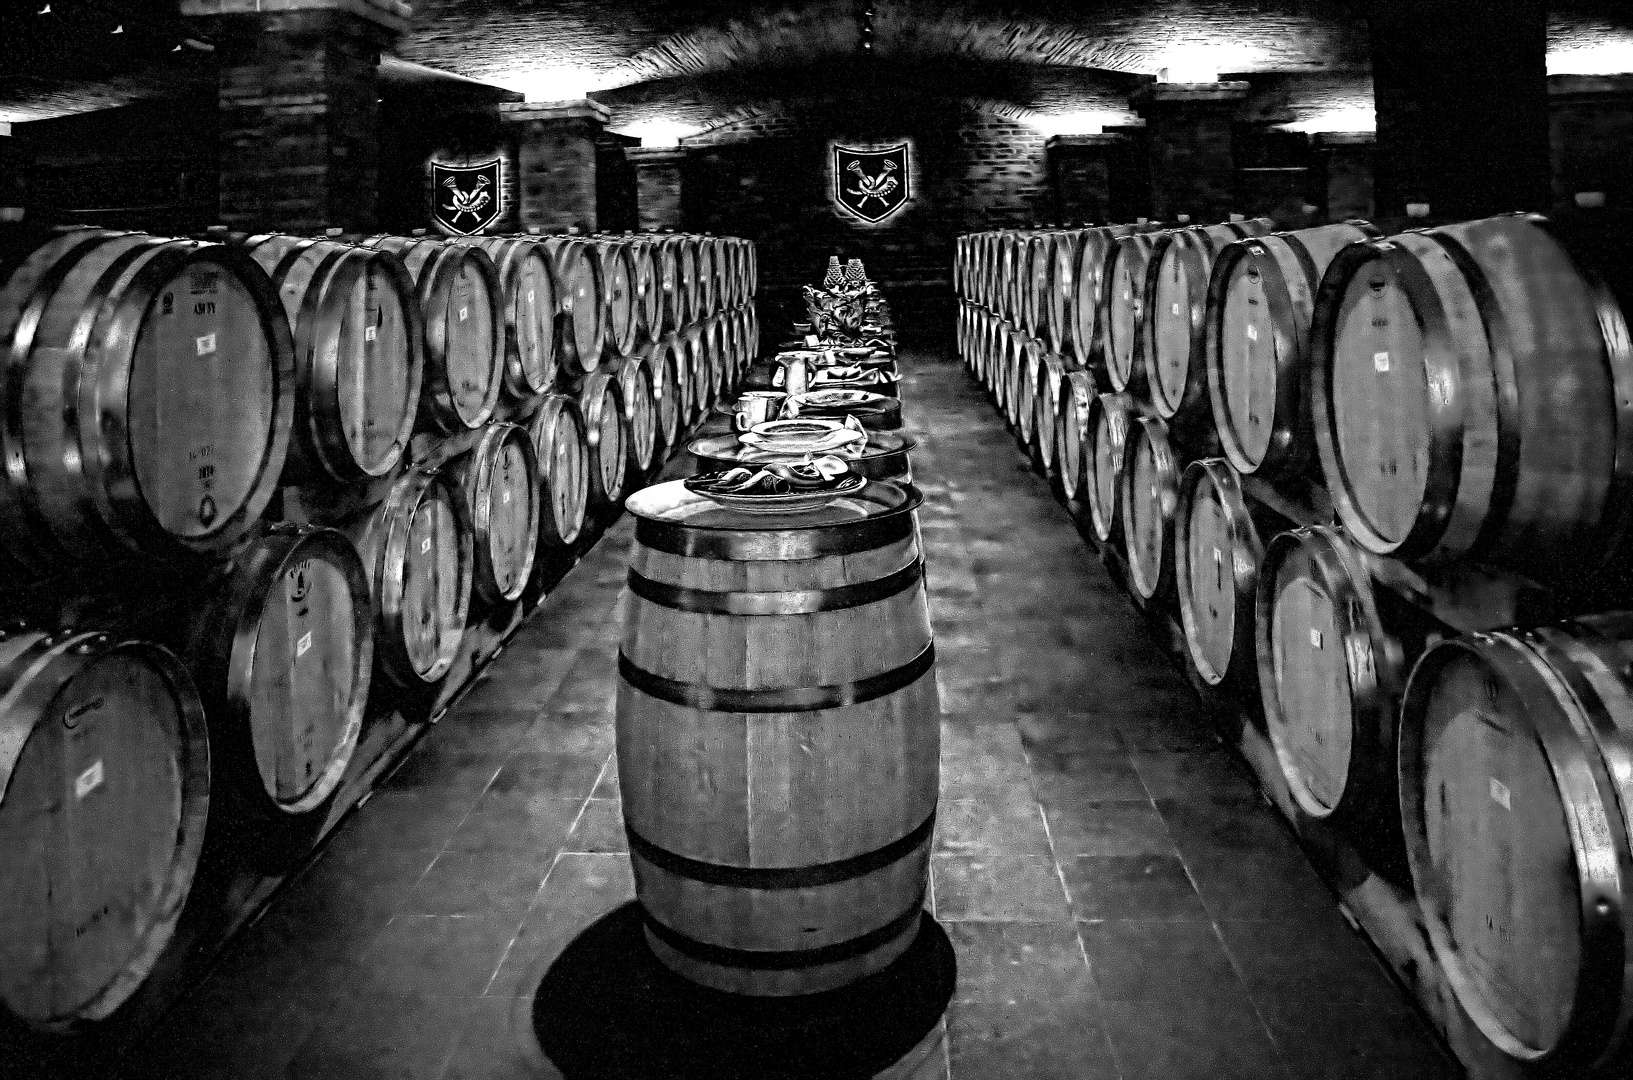  sieben Fässer Wein ... Weingut La Motte in Franschhoek, Südafrika